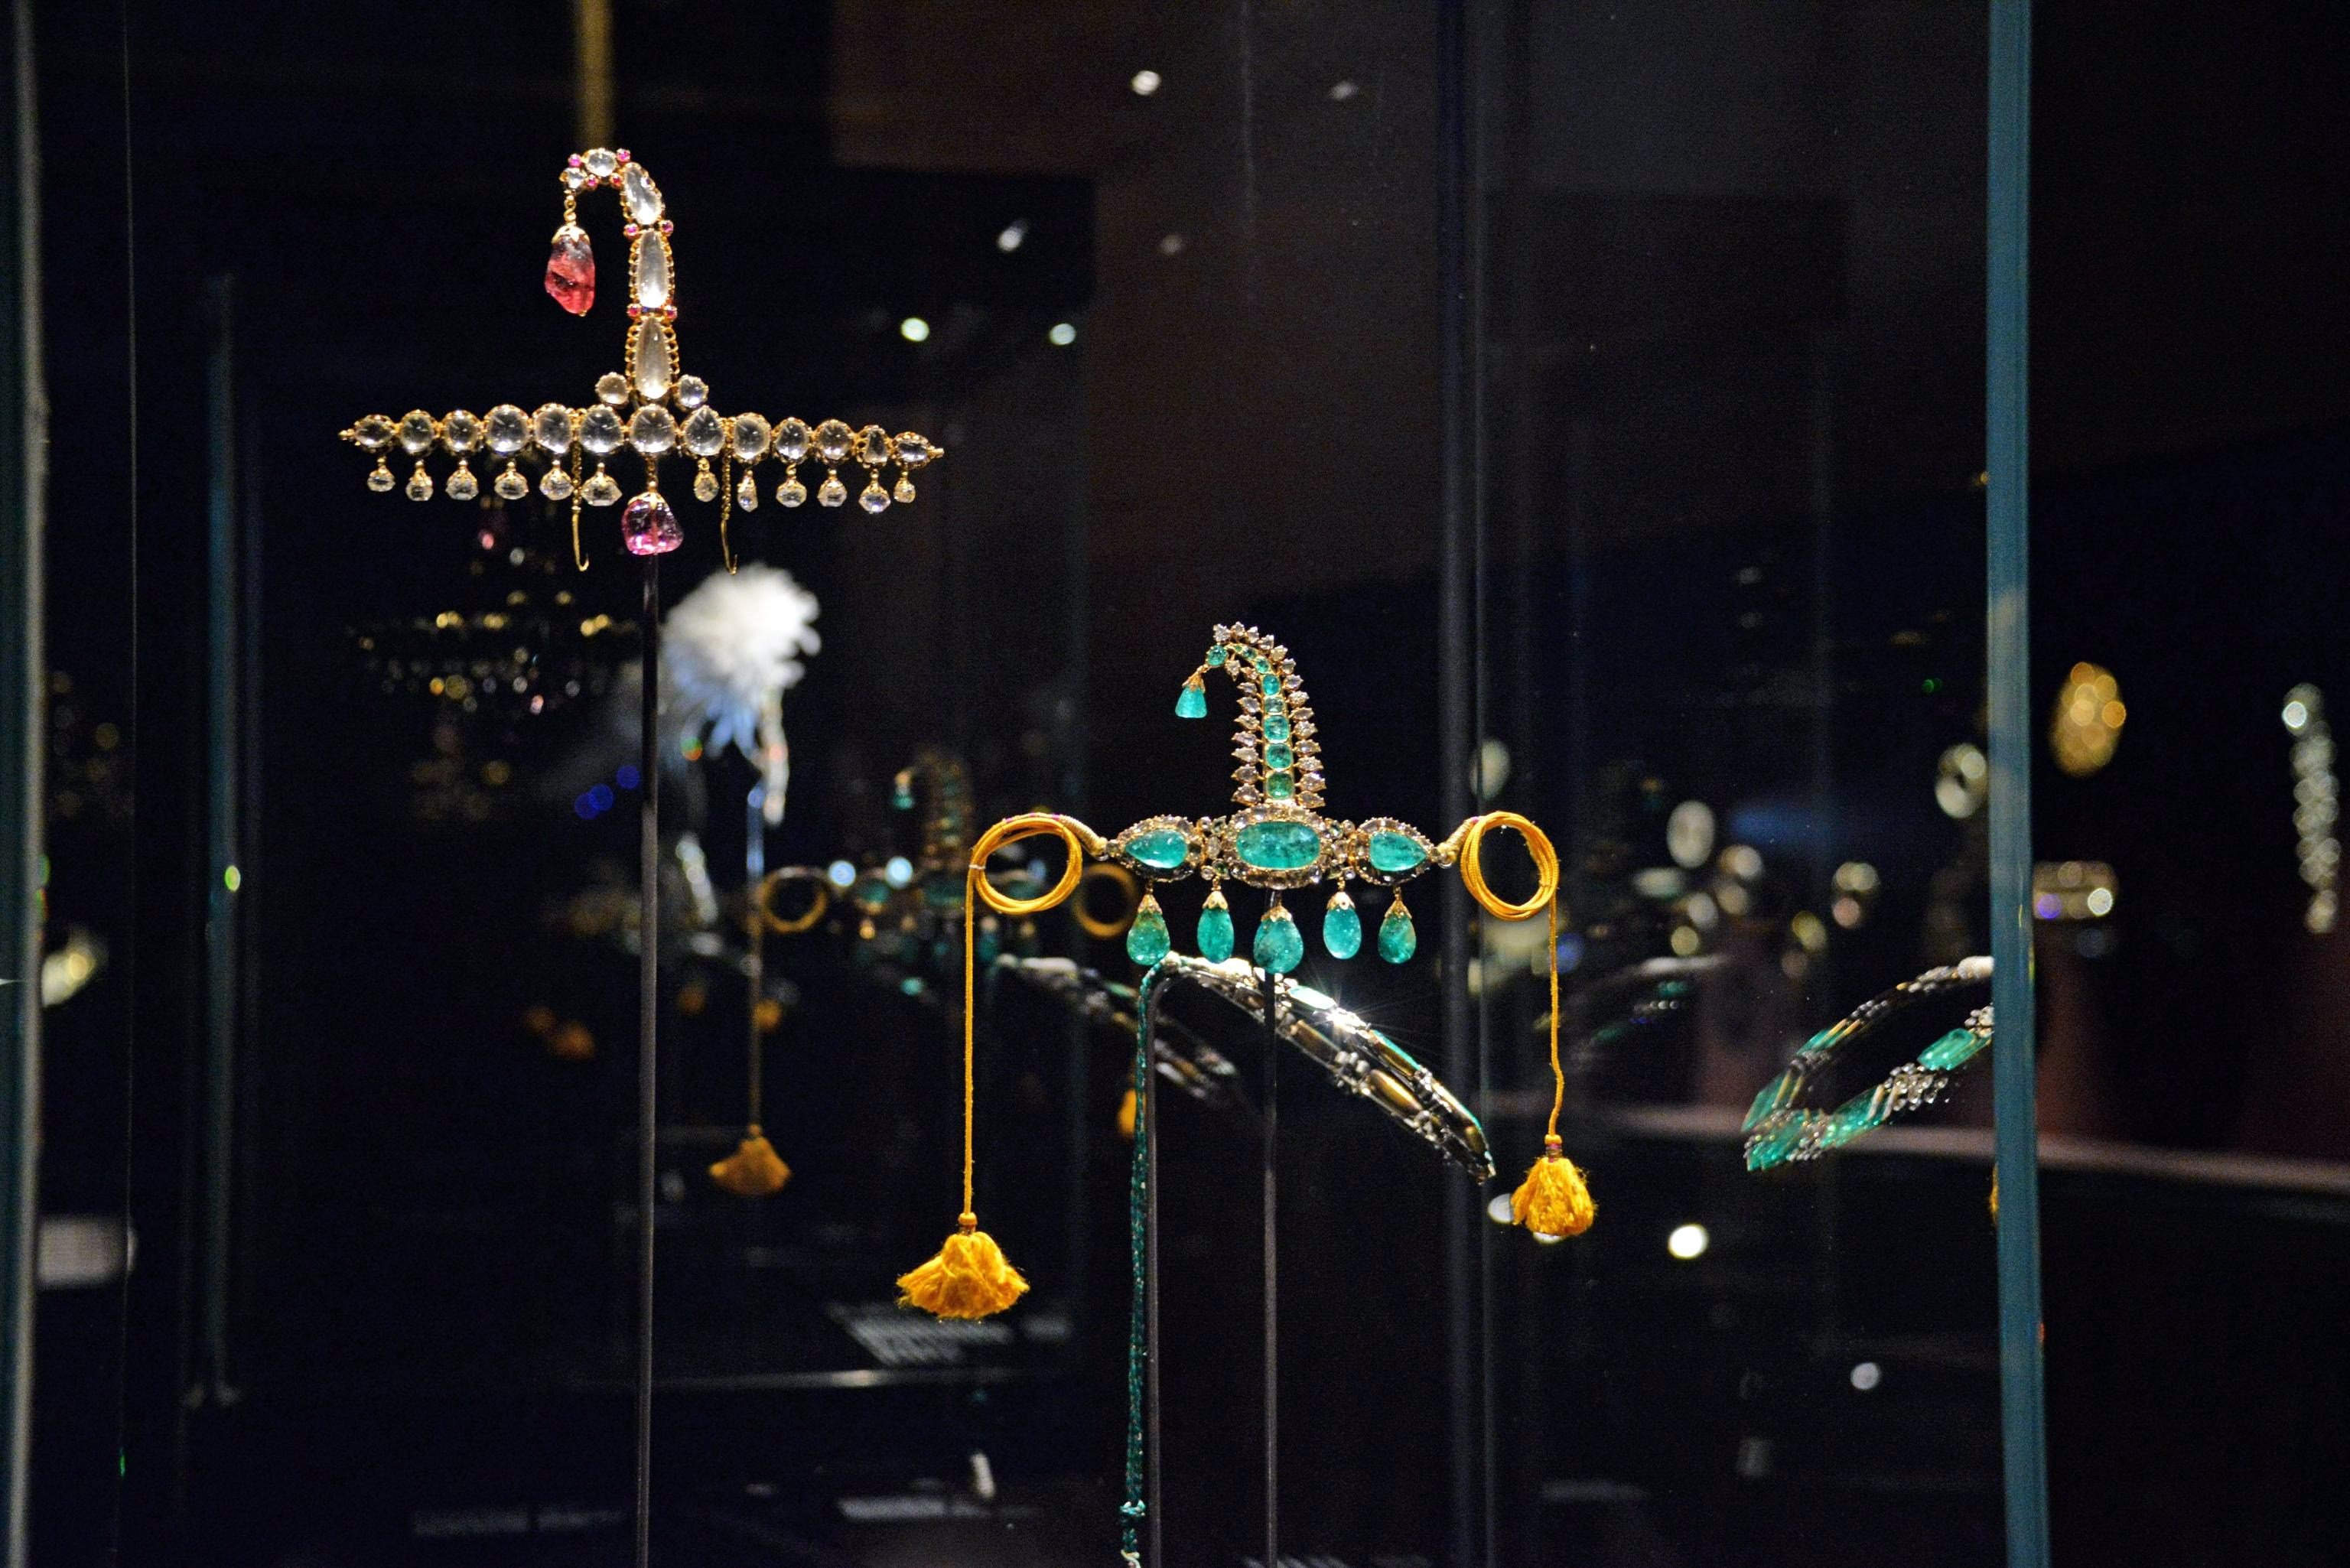  Roban joyas exhibidas en el Palacio Ducal de Venecia